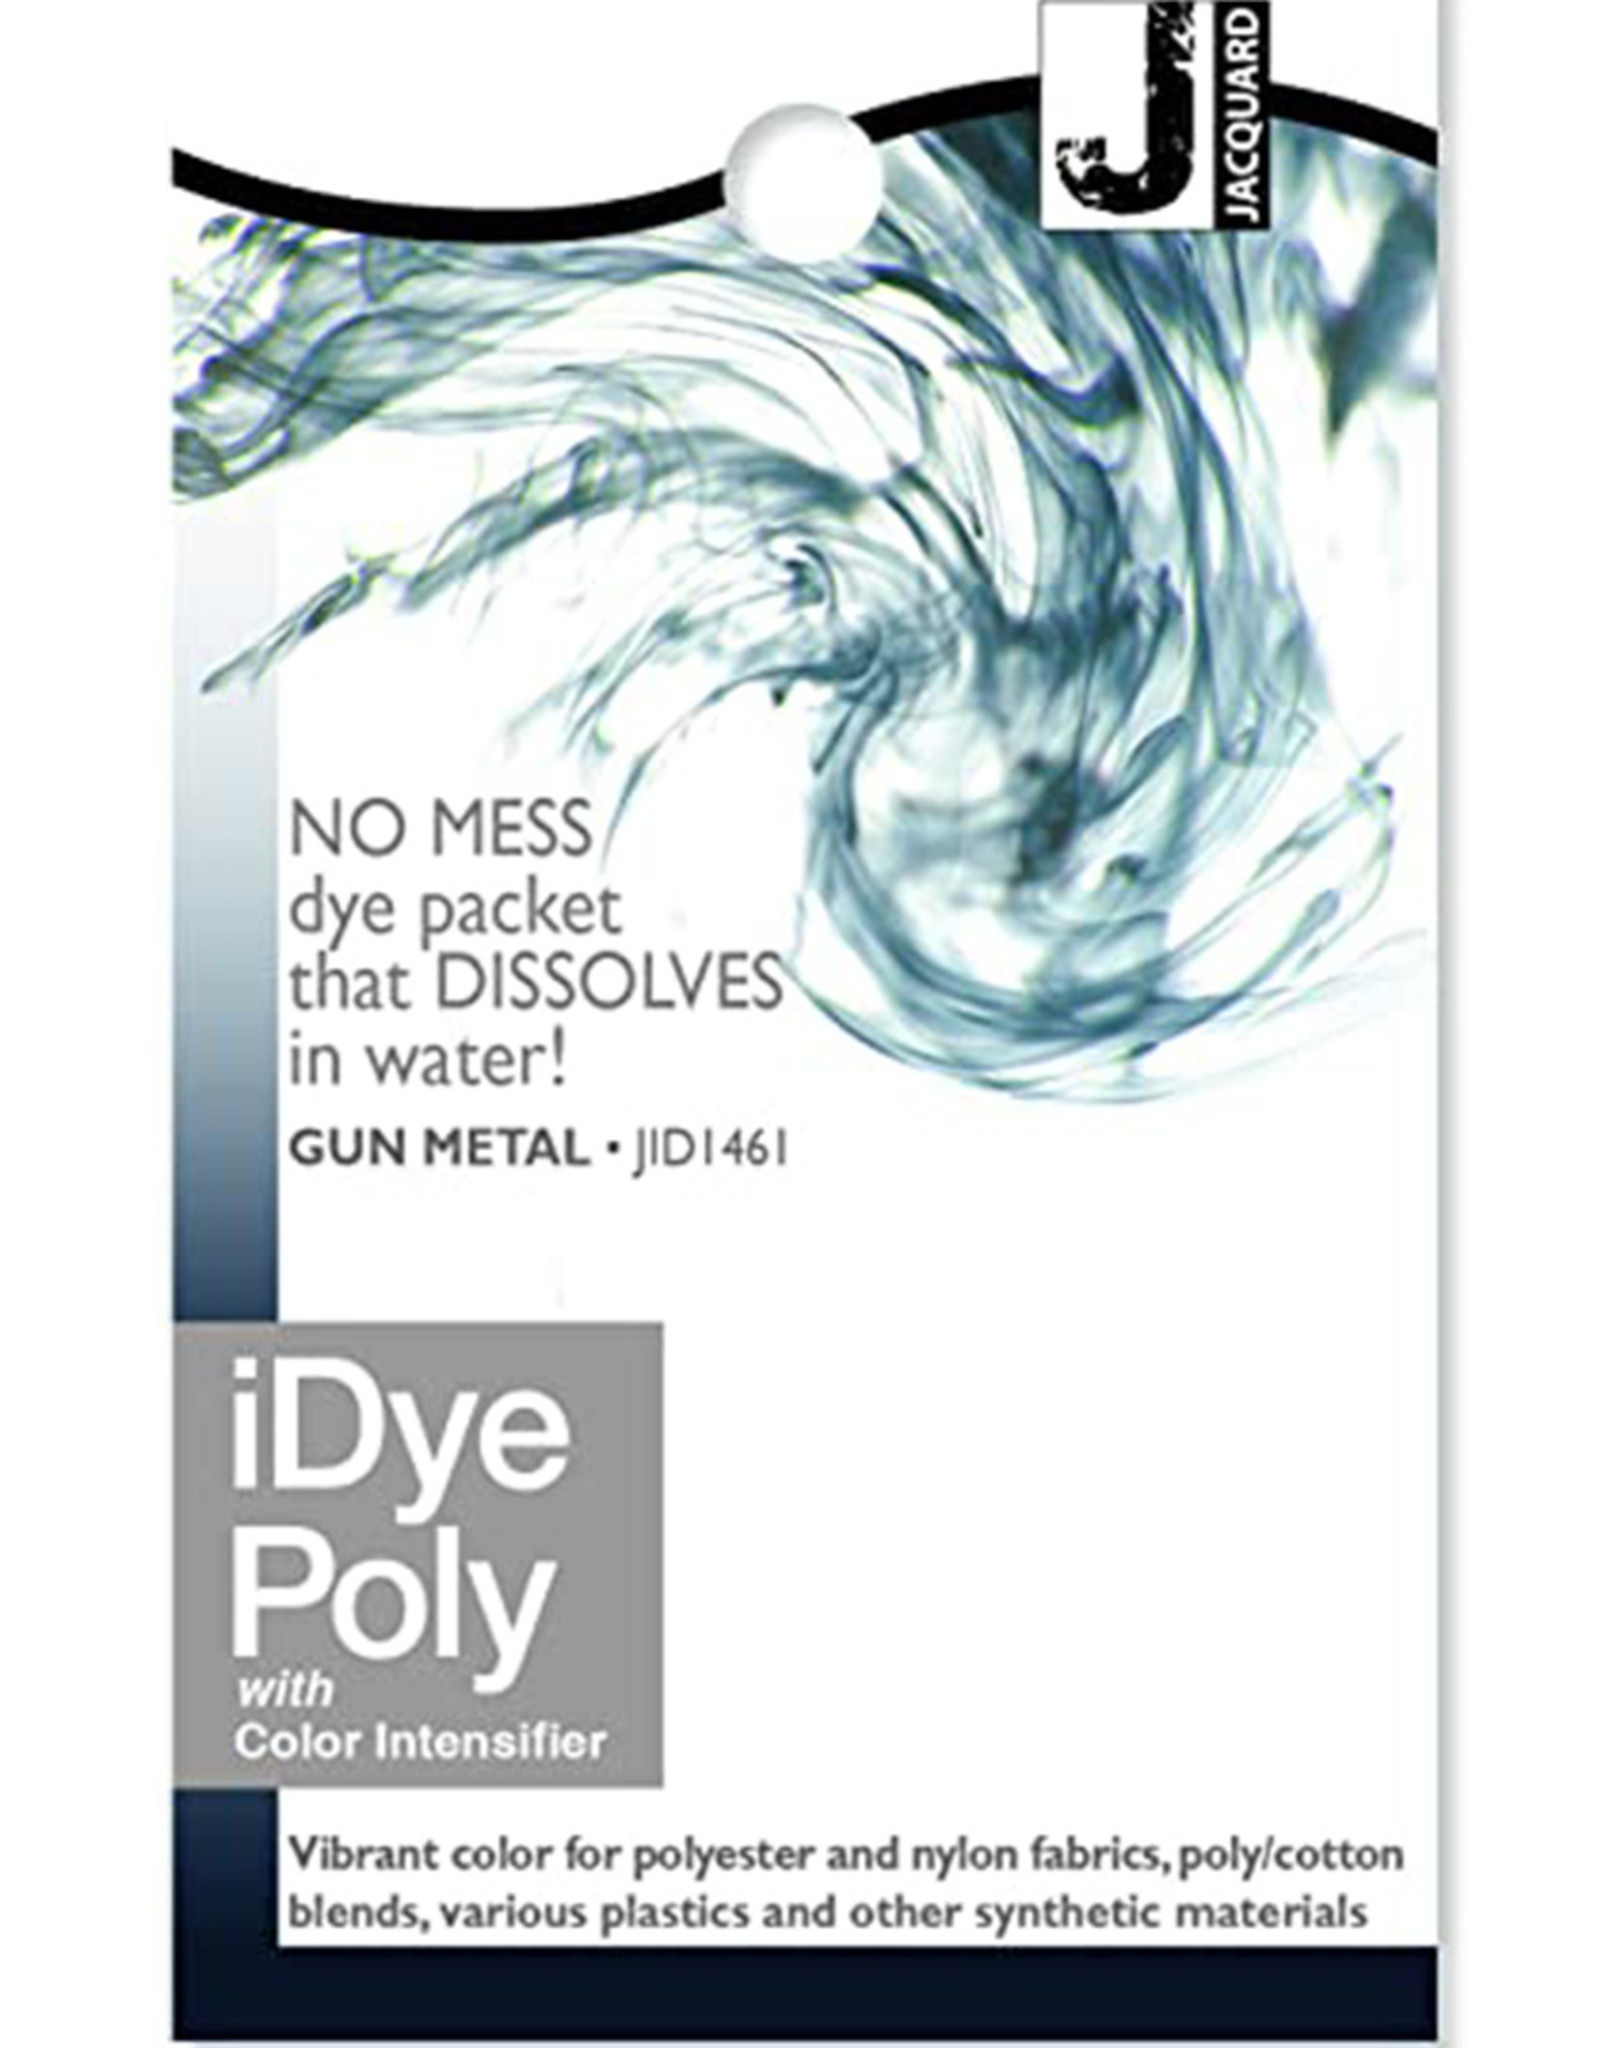 Teinture iDye Poly - Teinture textile noire pour tissus polyester